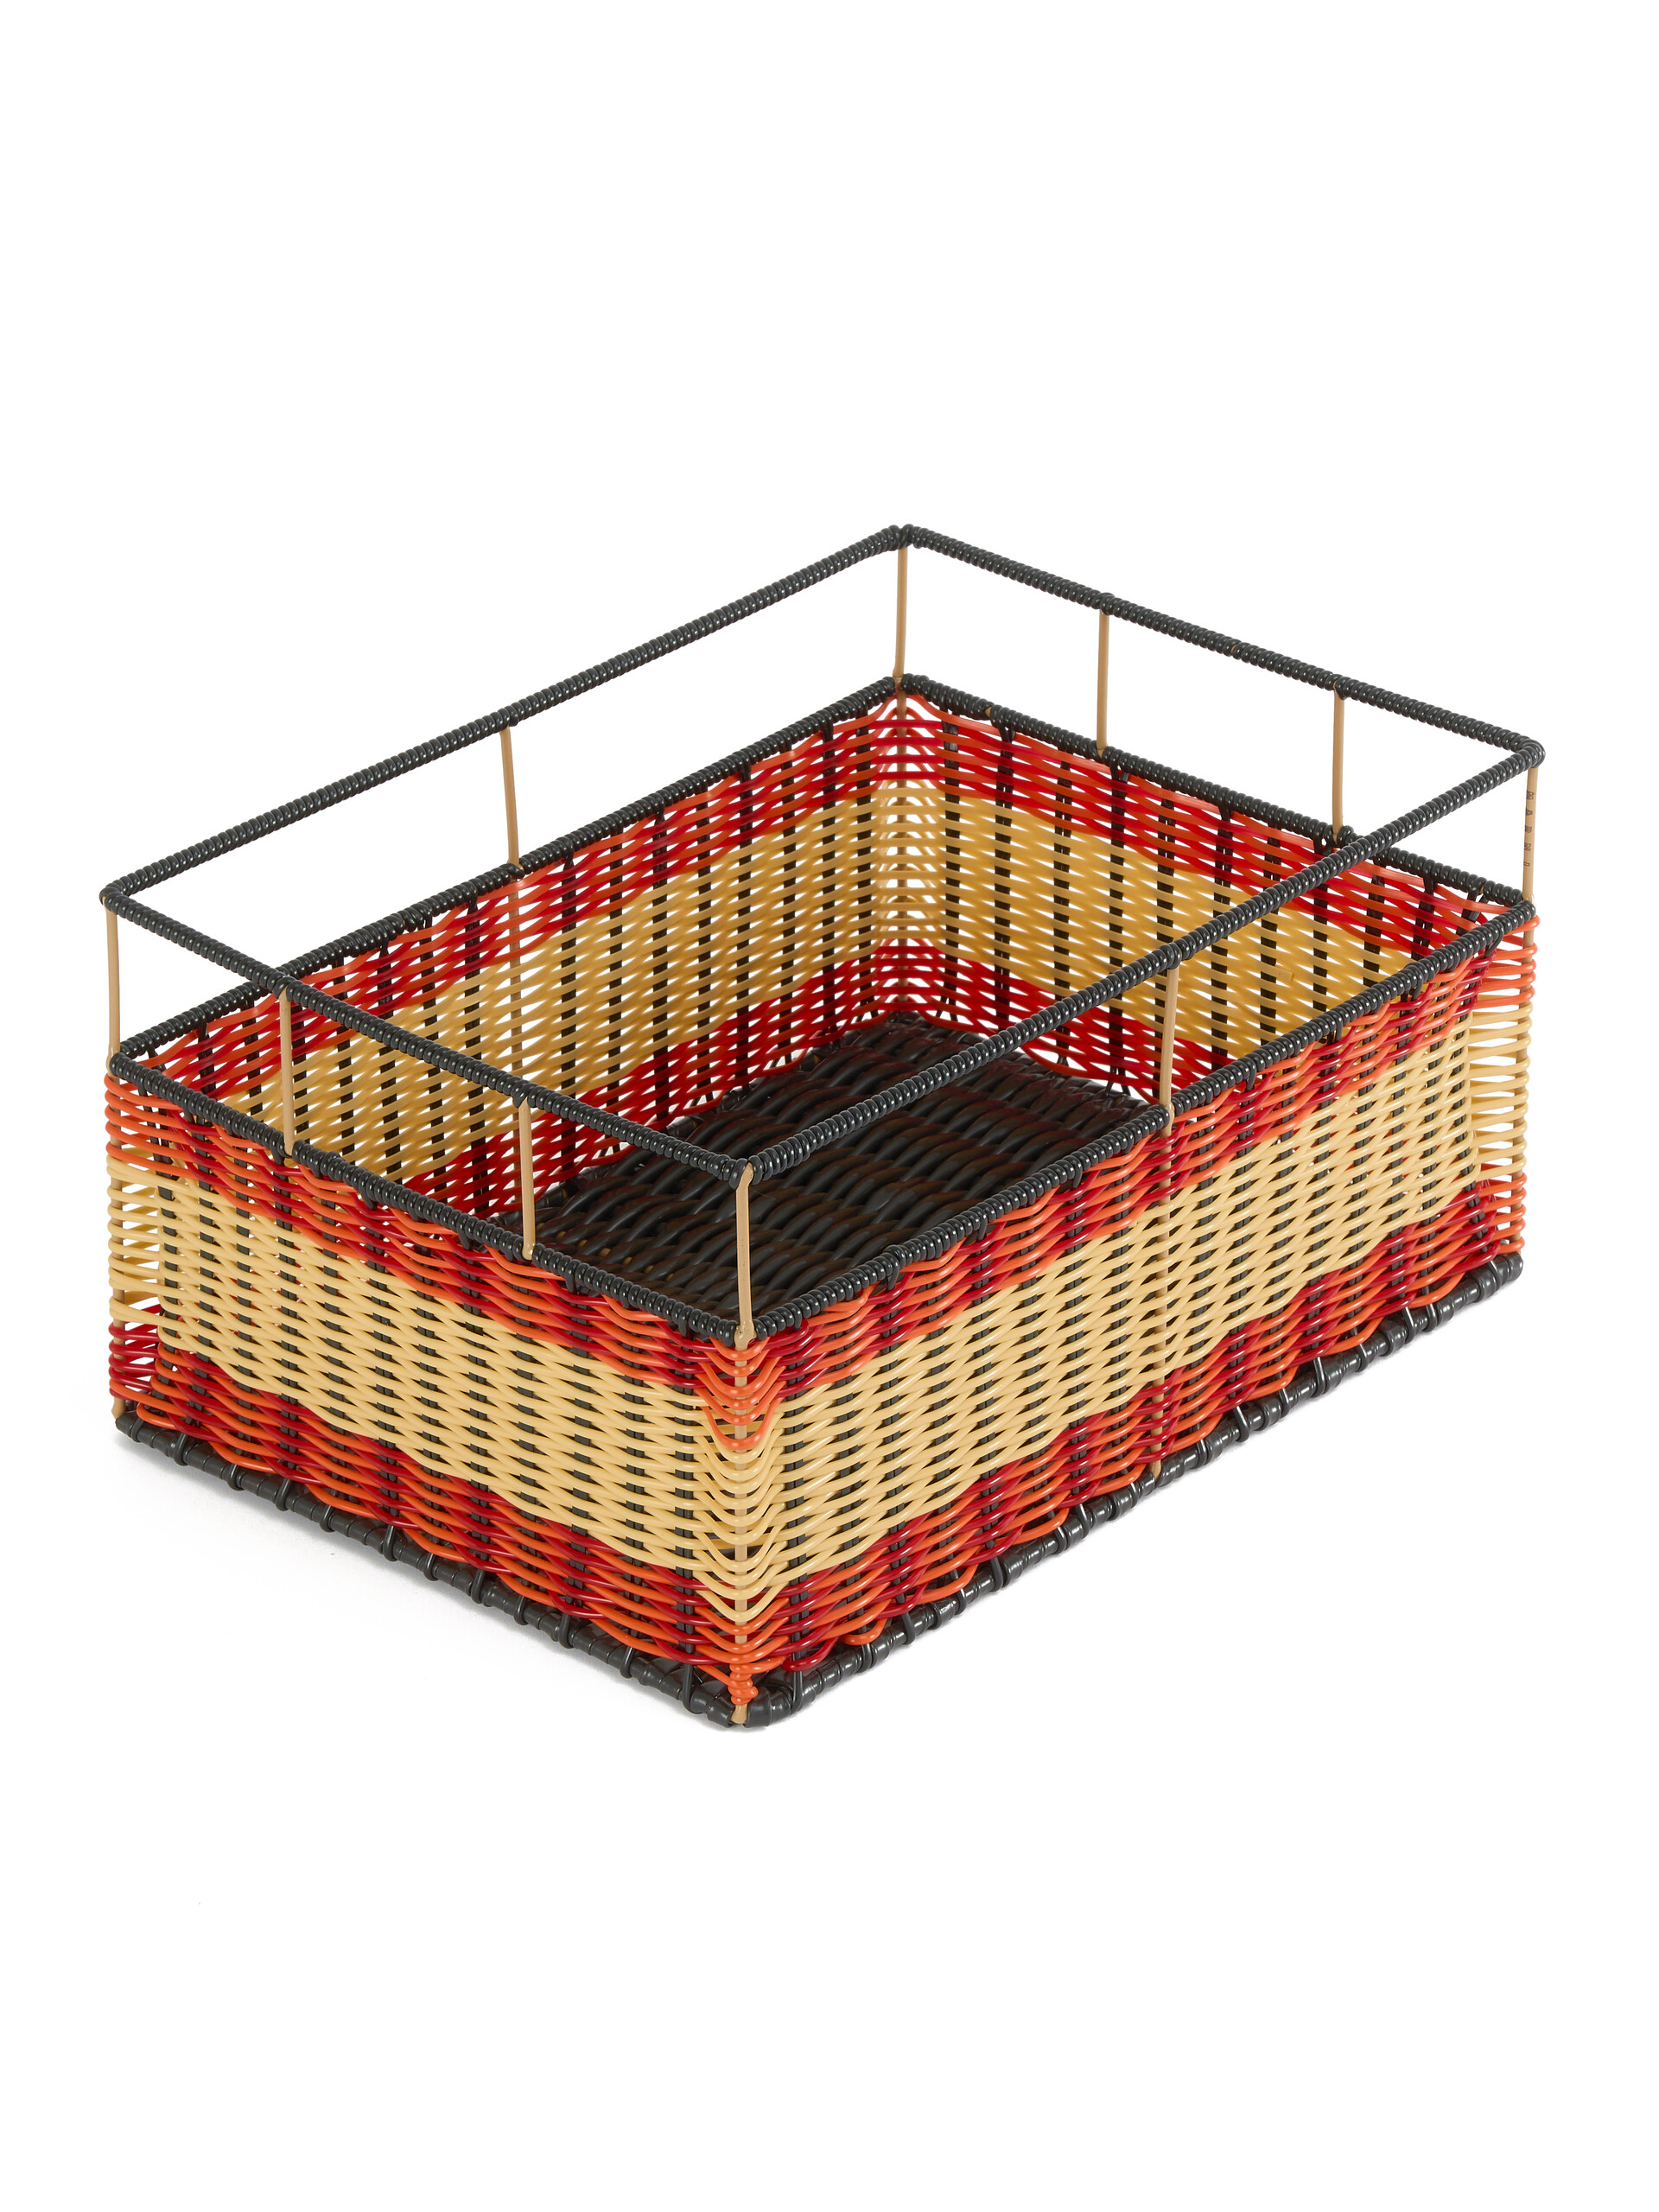 Orange and red Marni Market rectangular storage basket - Furniture - Image 3